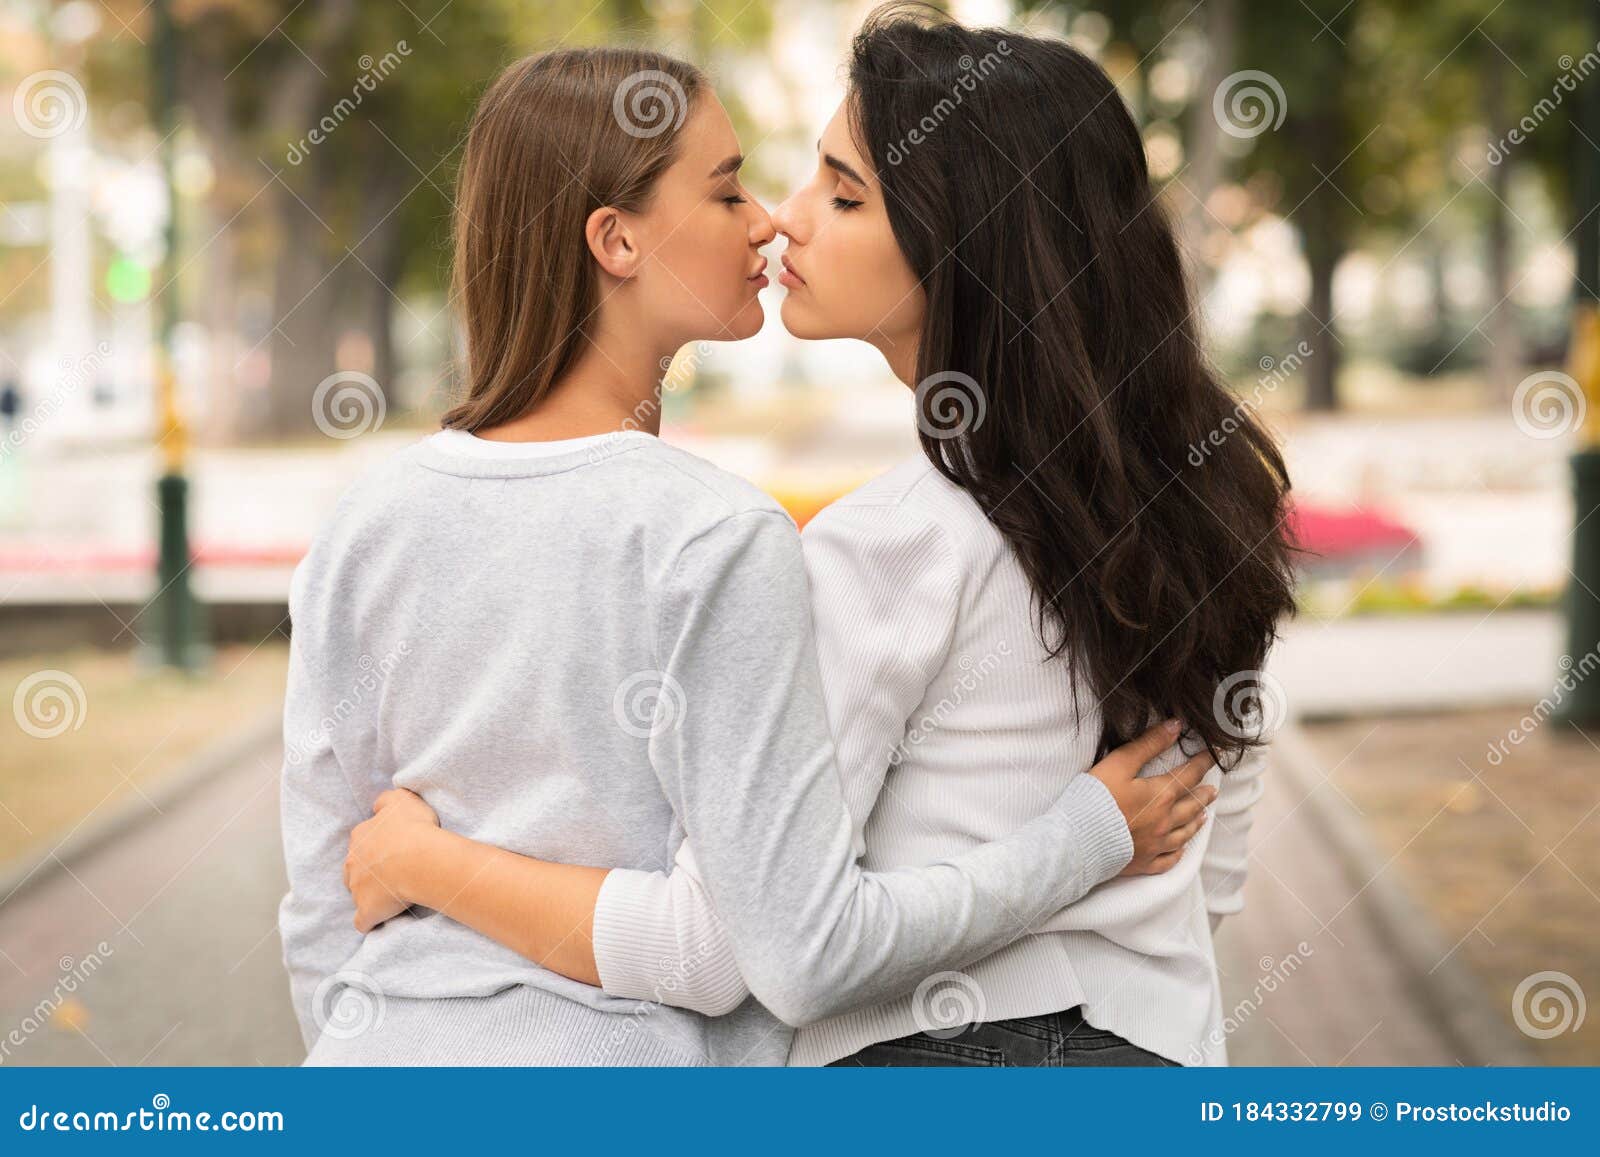 Pareja De Chicas Lesbianas Besándose Con Una Vista Posterior Al Exterior Imagen de archivo